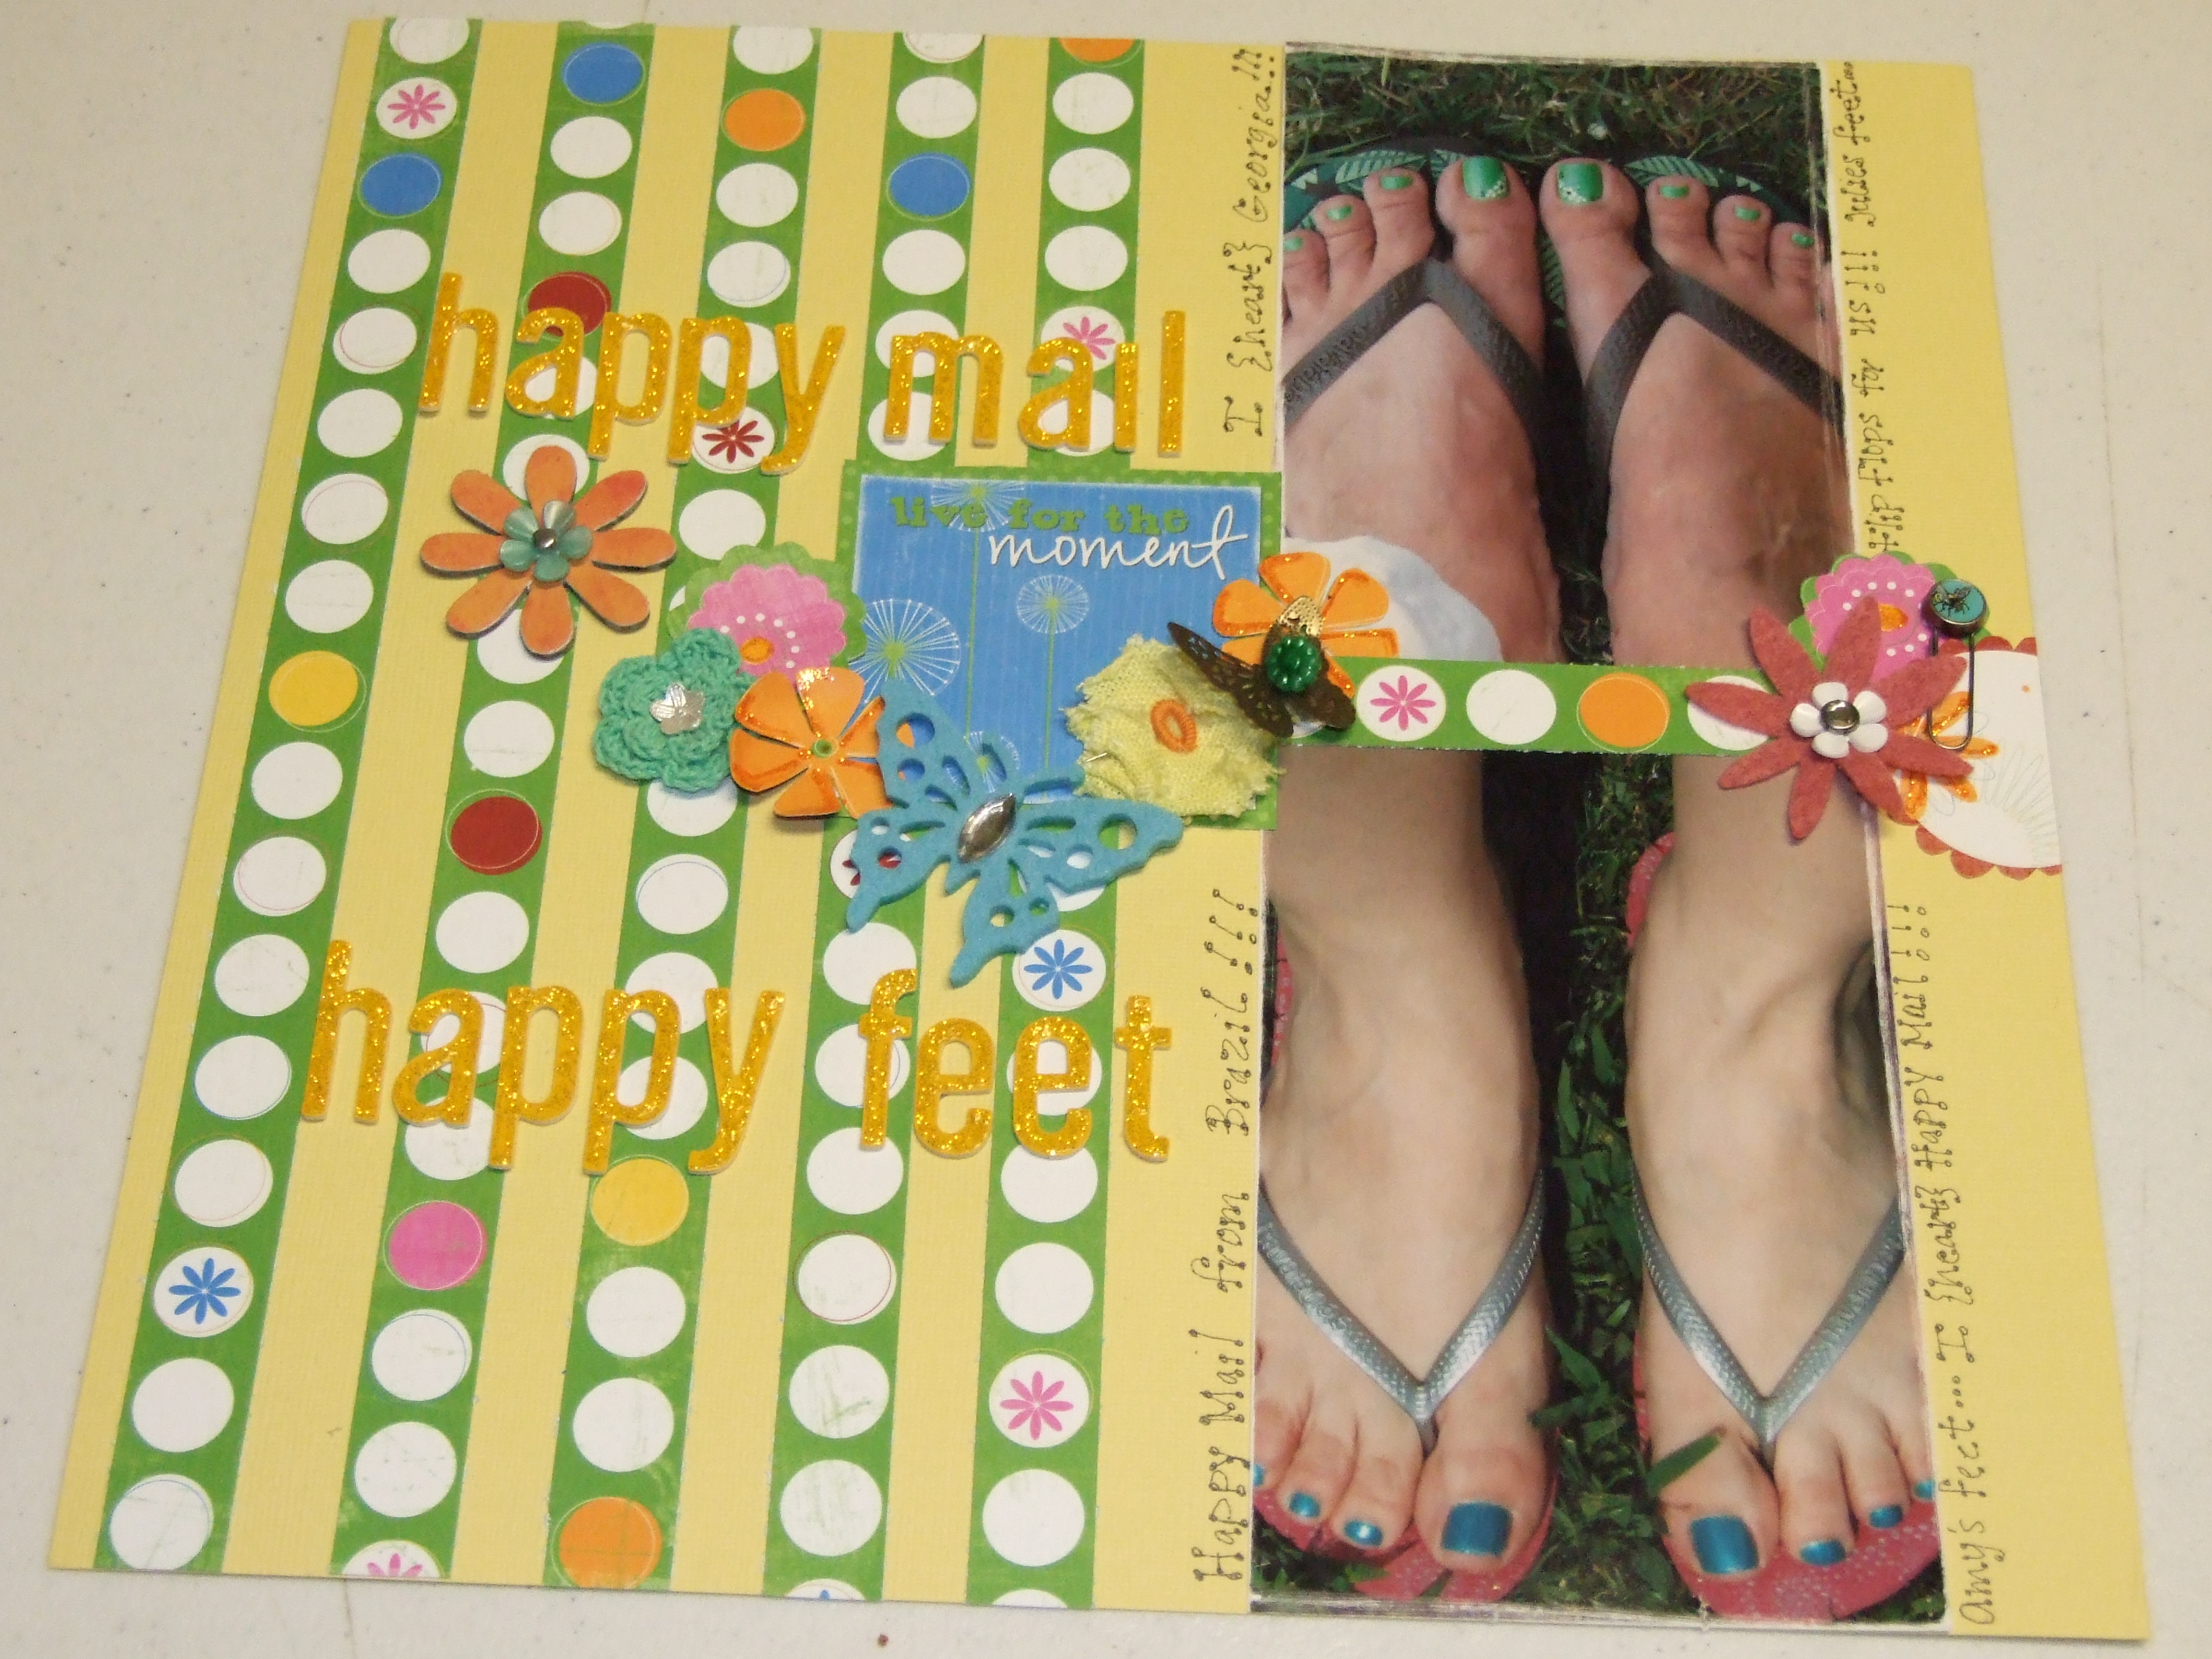 Happy mail, Happy Feet...